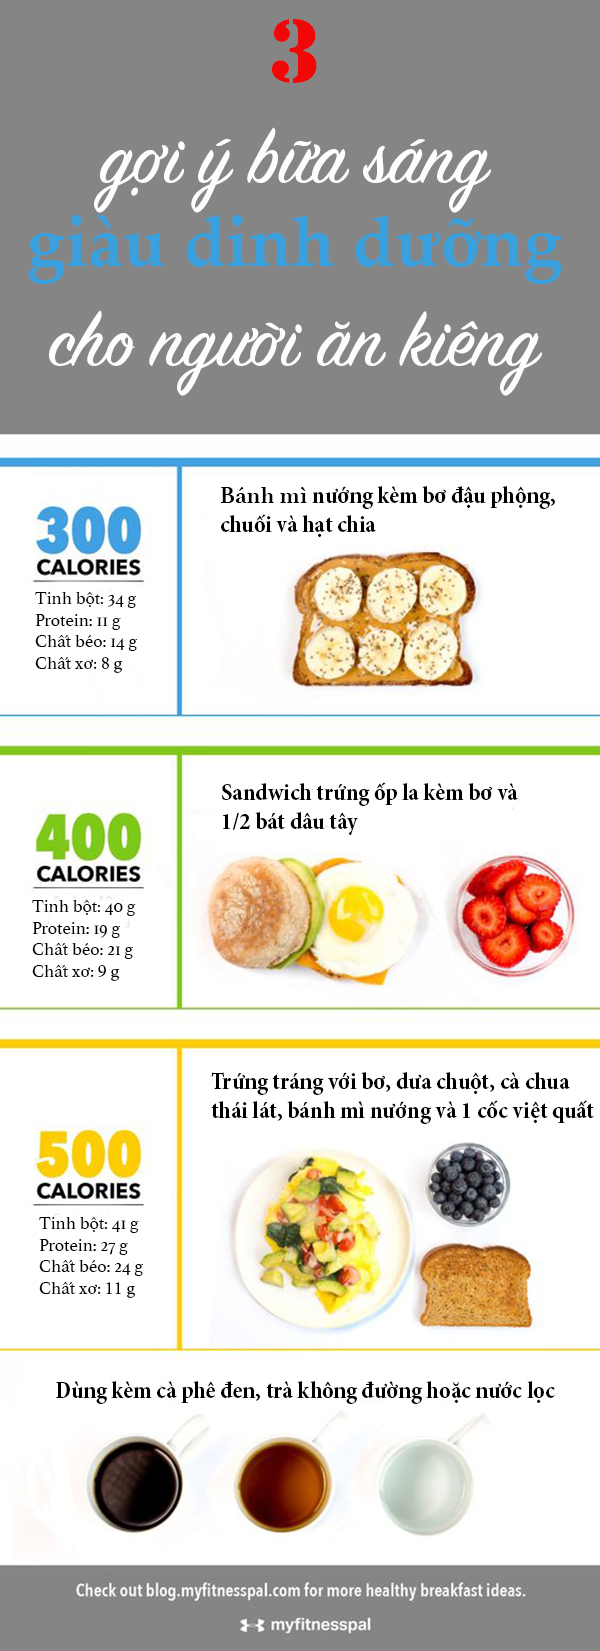 3 gợi ý bữa sáng giàu dinh dưỡng cho người giảm cân - Ảnh 1